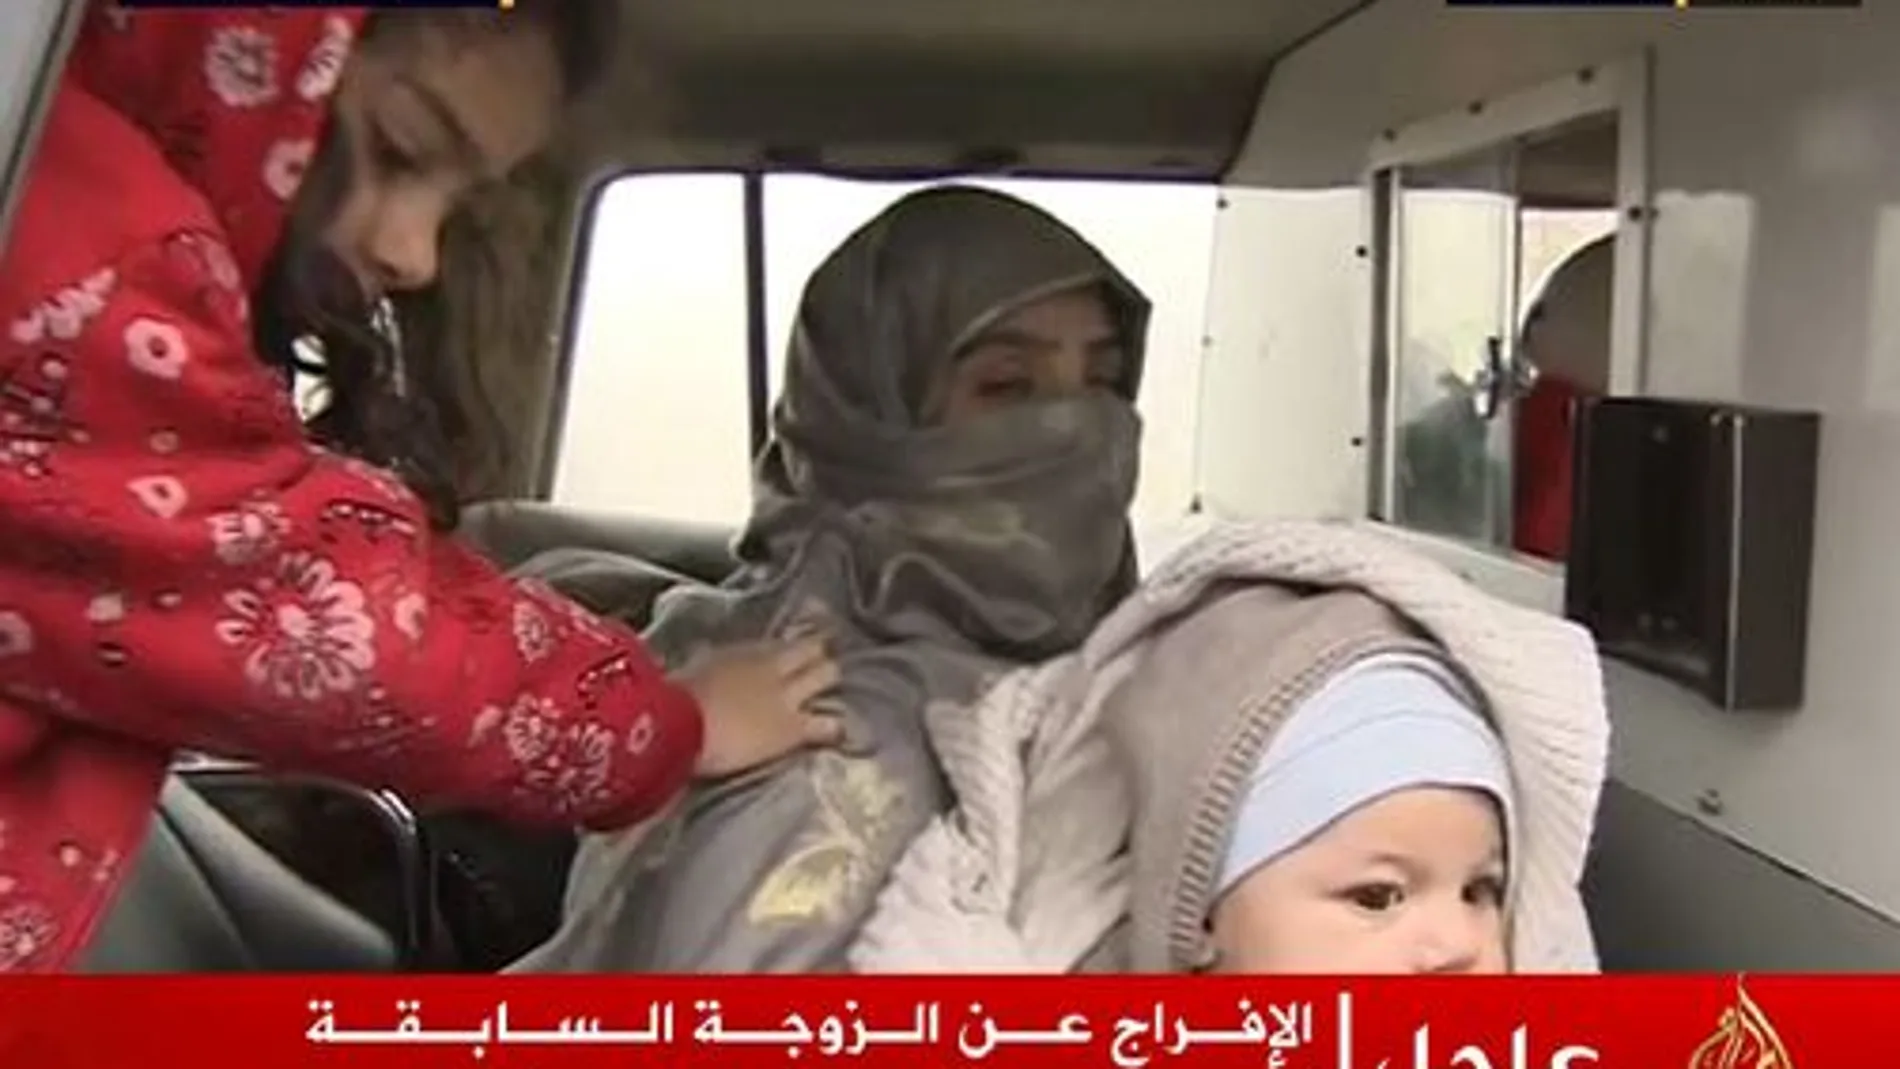 Saja al Dulaimi con sus dos hijos en una imagen de la televisión Al Jazeera